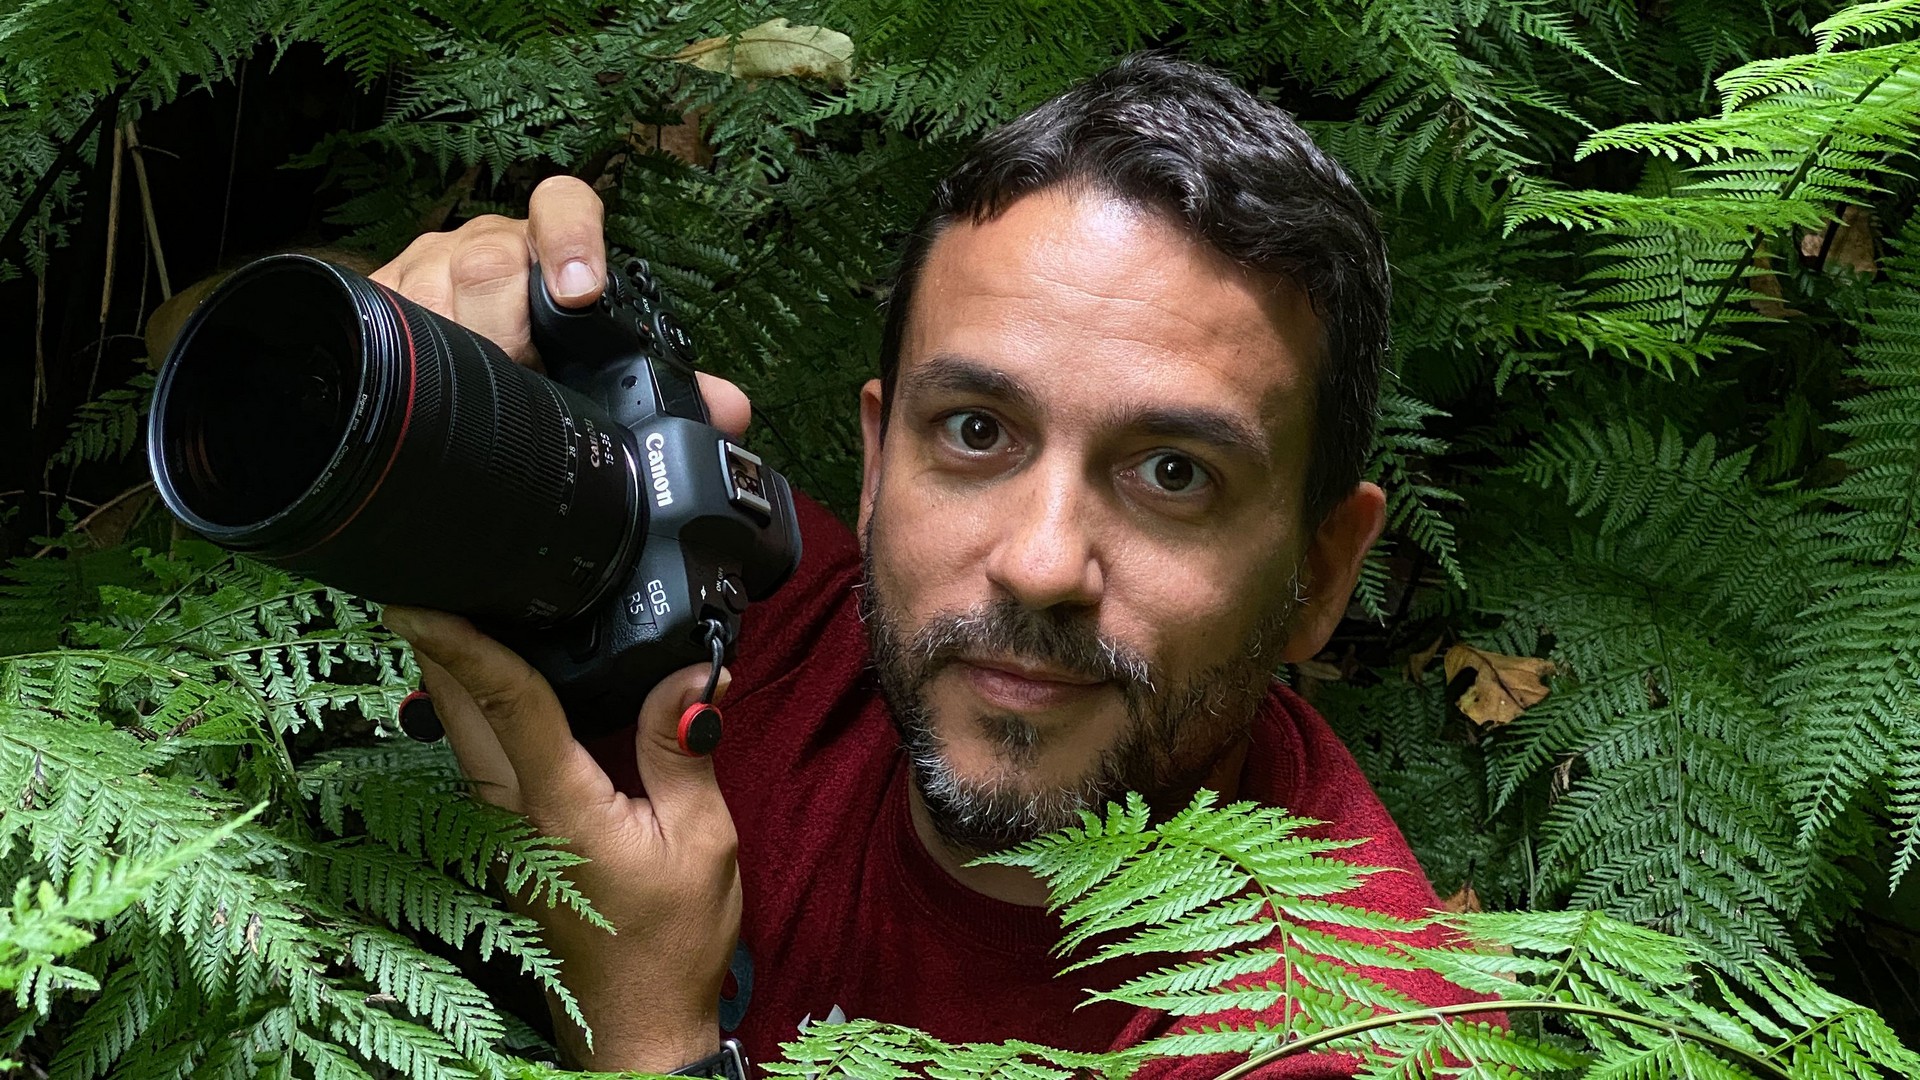 سفير Canon جويل سانتوس ينحني وسط نبات السرخس في الغابة وهو يحمل كاميرا Canon.